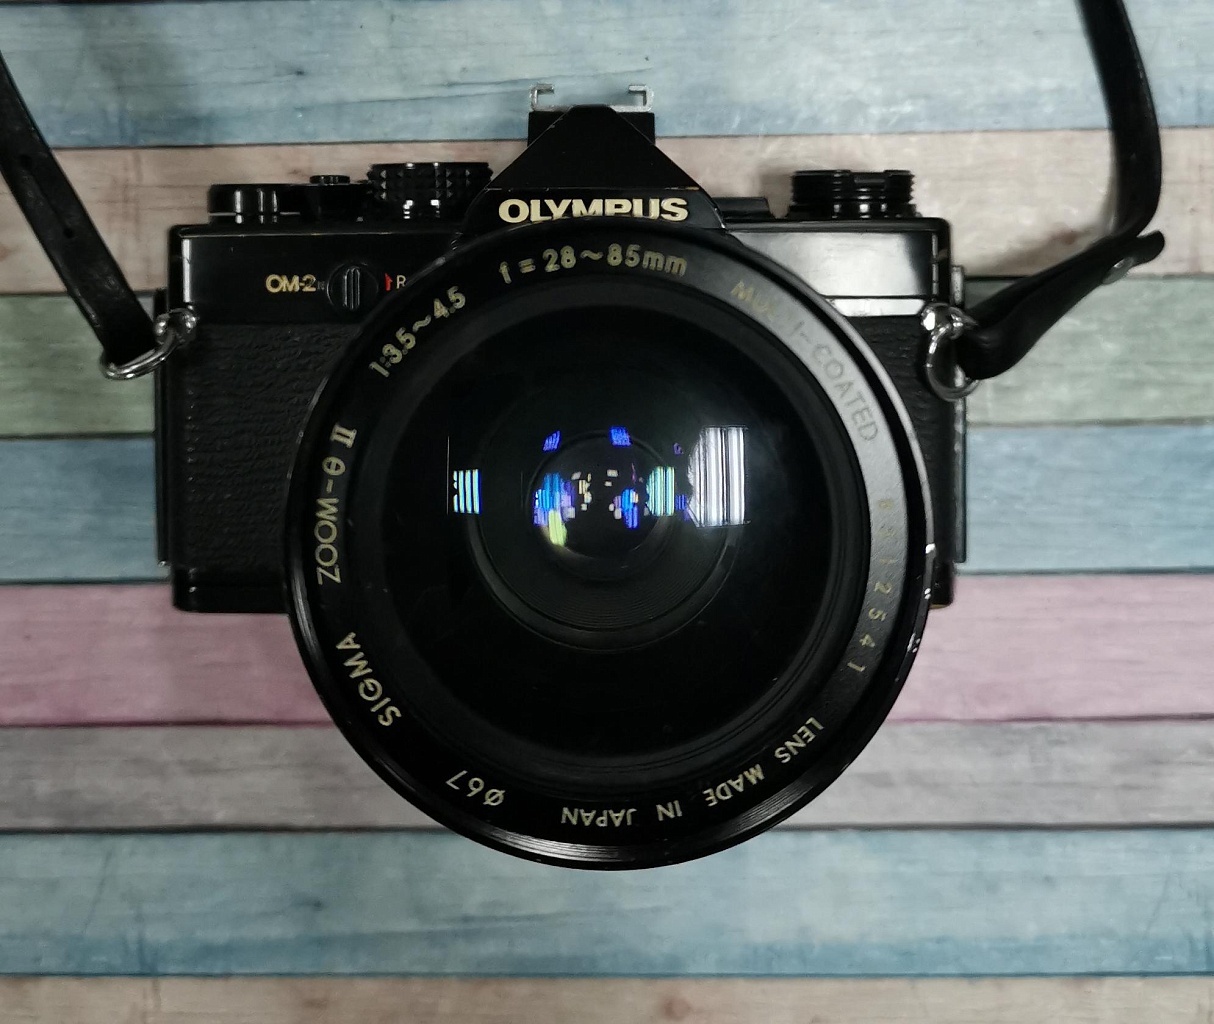 Olympus om-2n черный + Sigma zoom 28-85 mm f/3.5-4.5 фото №1